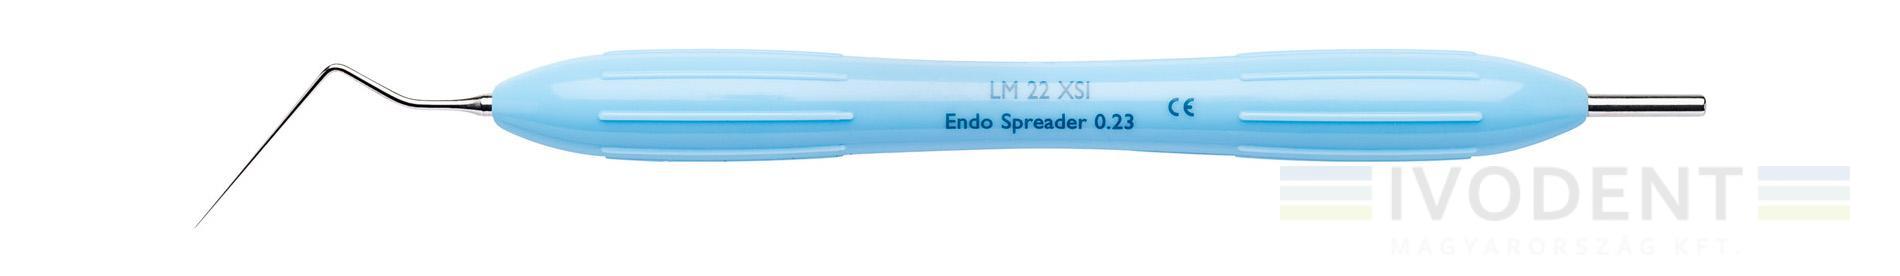 Endo Spreader 0,23mm